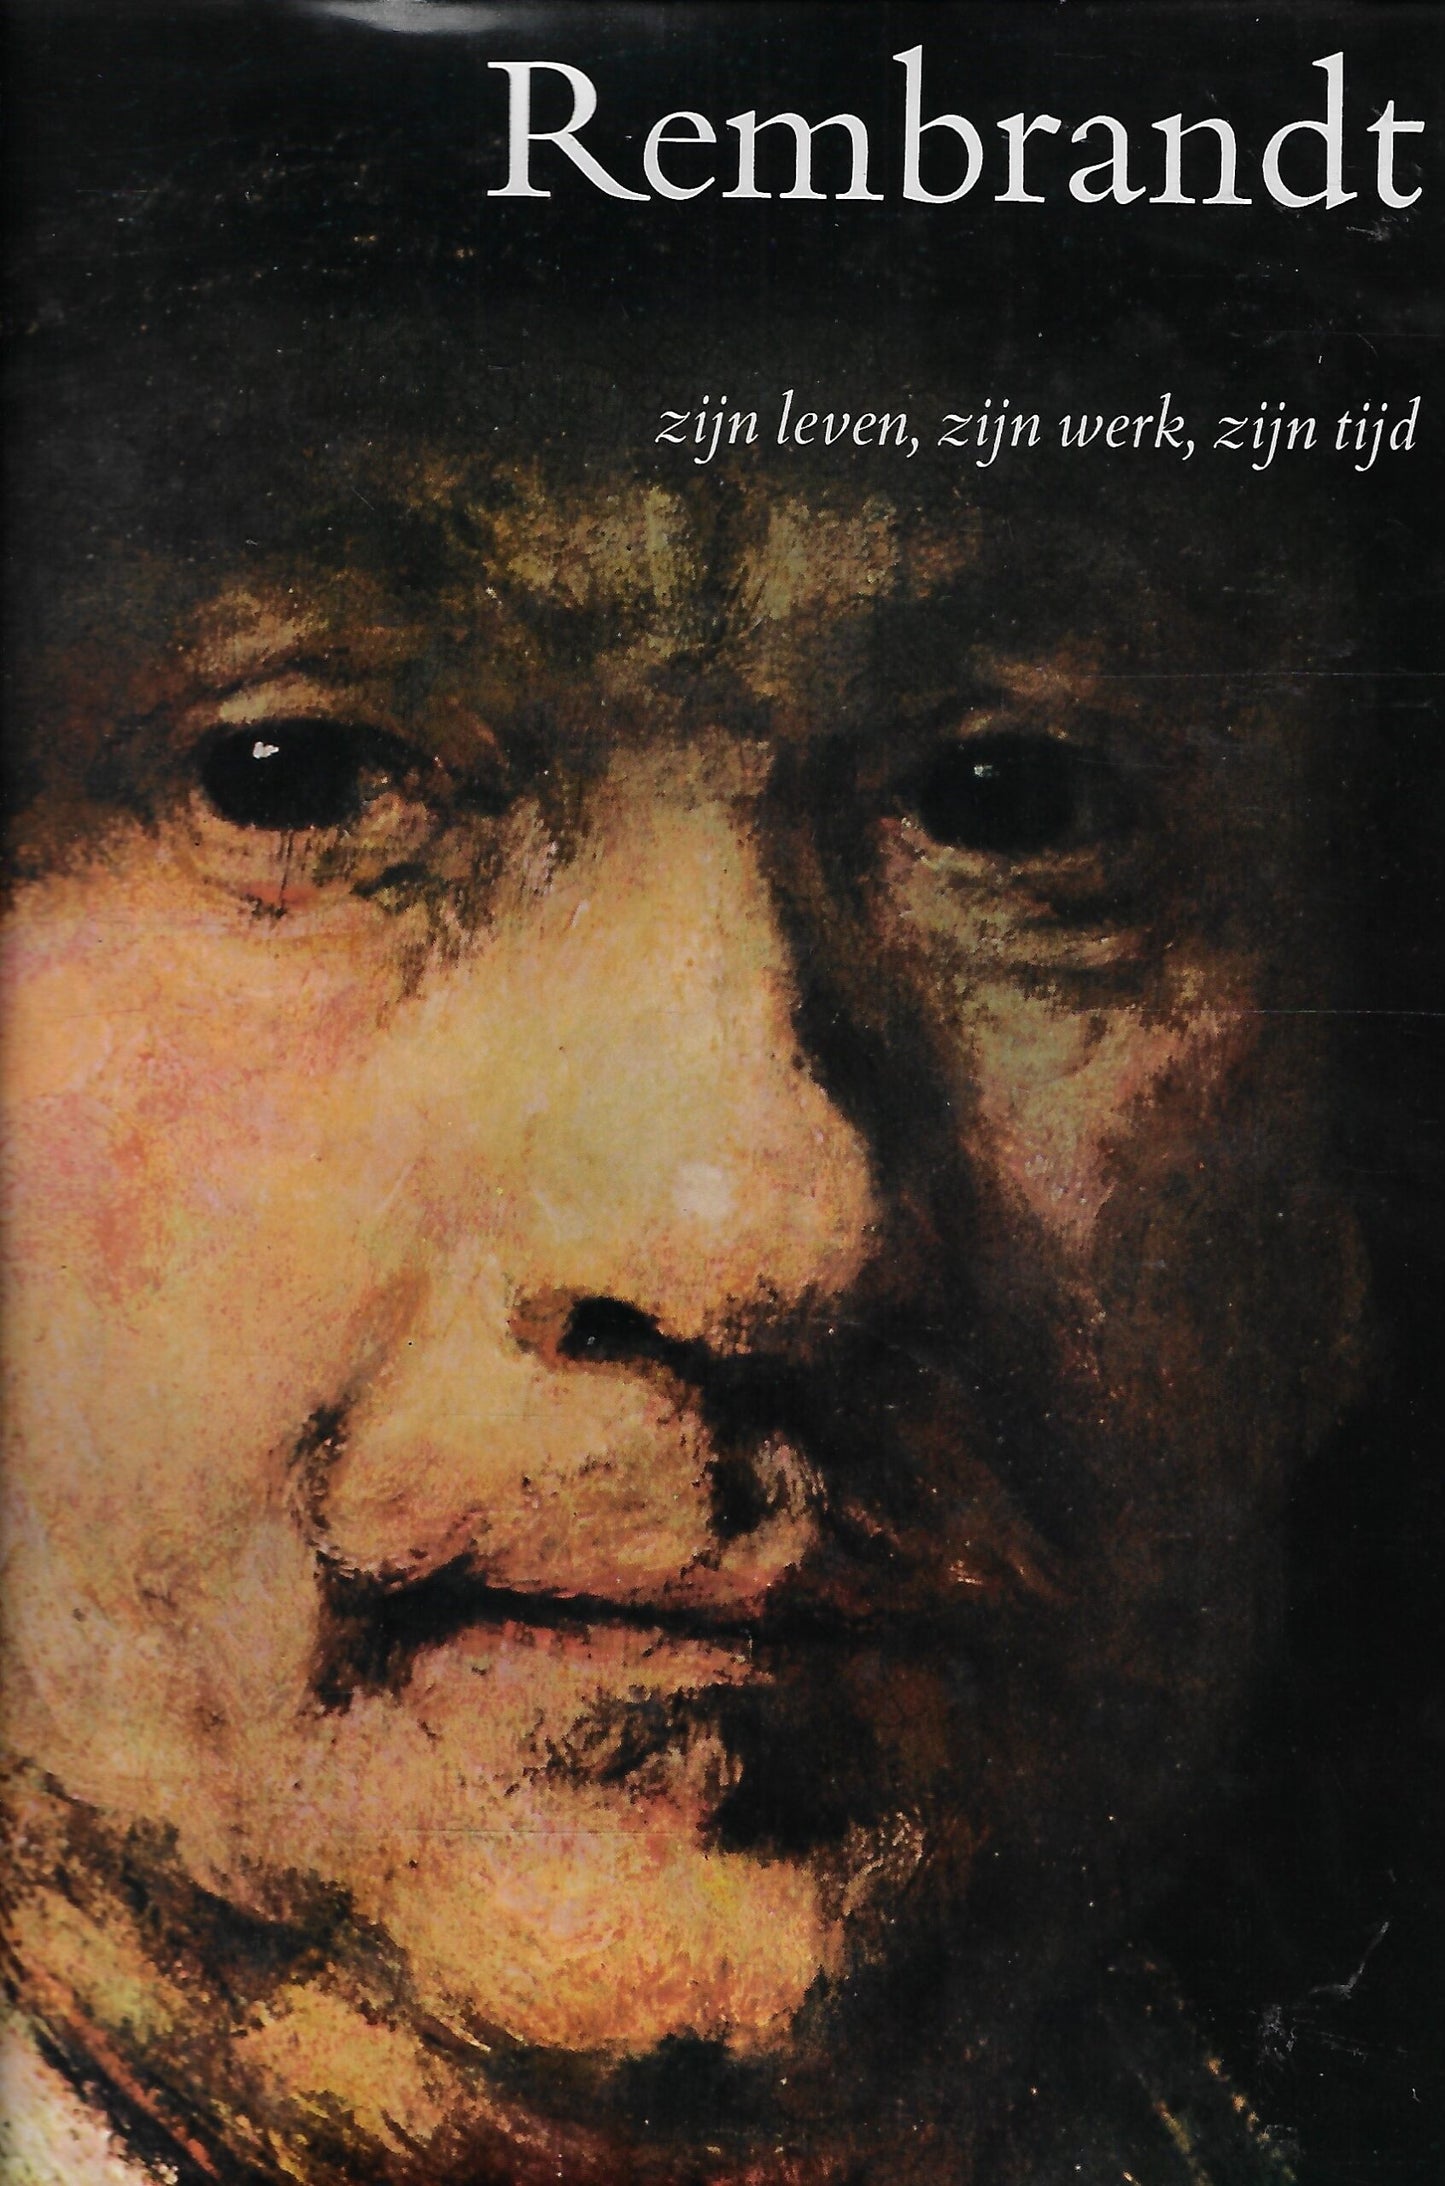 Rembrandt - zijn leven, zijn werk, zijn tijd